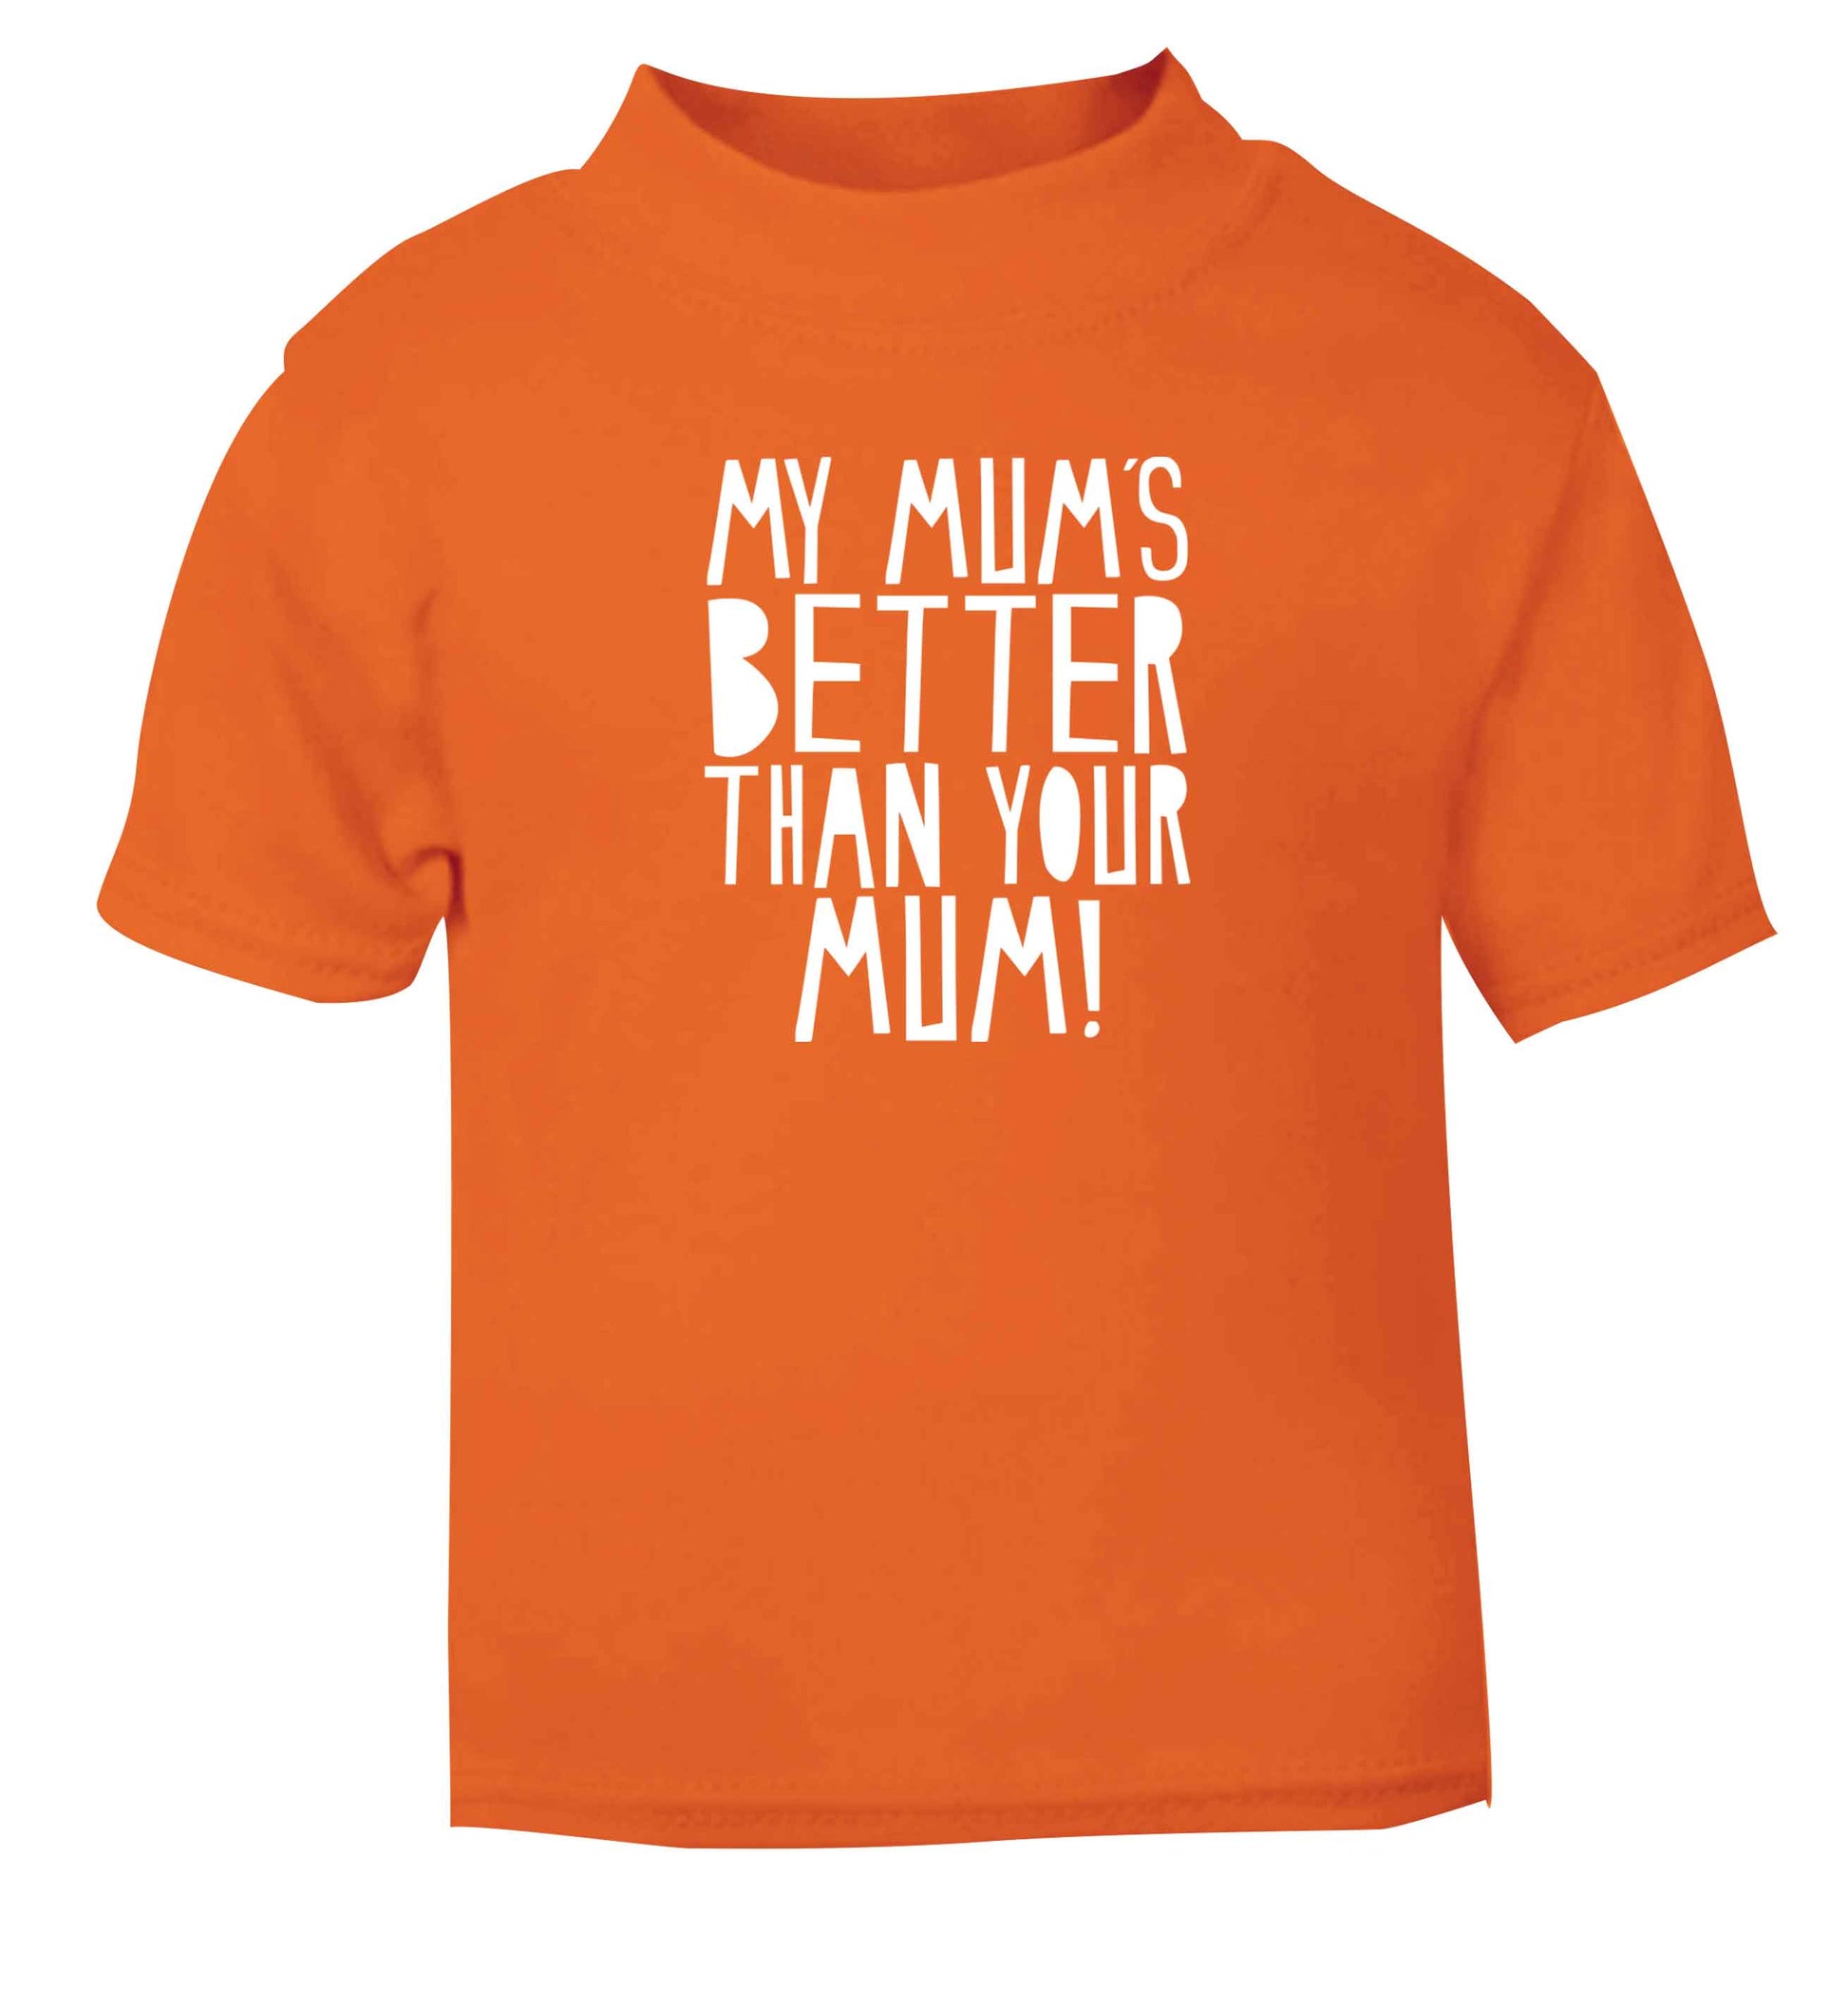 My mum's better than your mum orange baby toddler Tshirt 2 Years